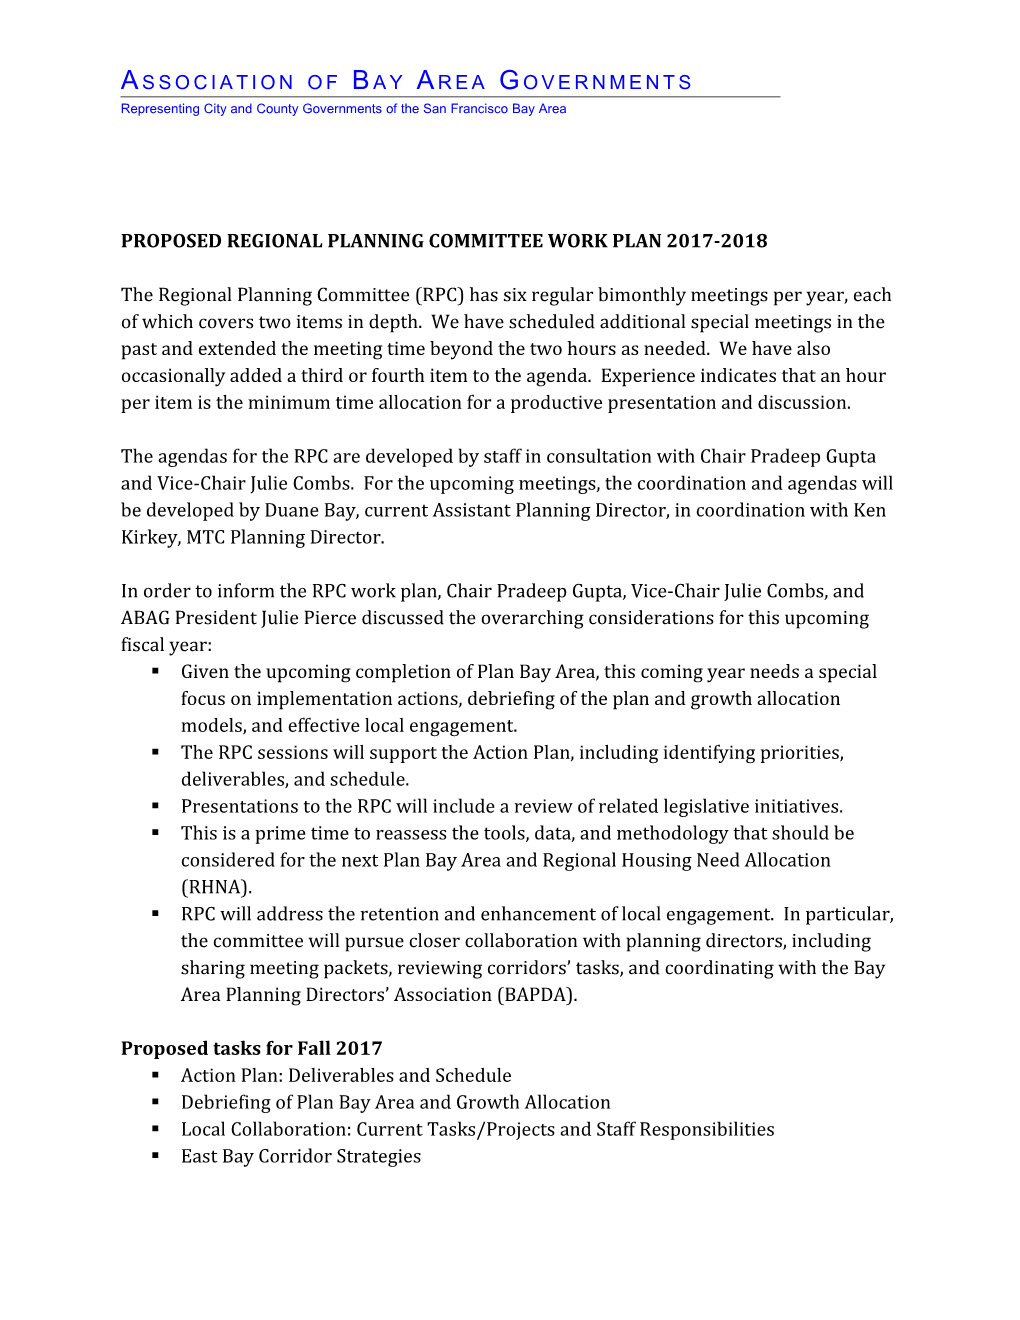 Proposed Regional Planning Committee Work Plan 2017-2018